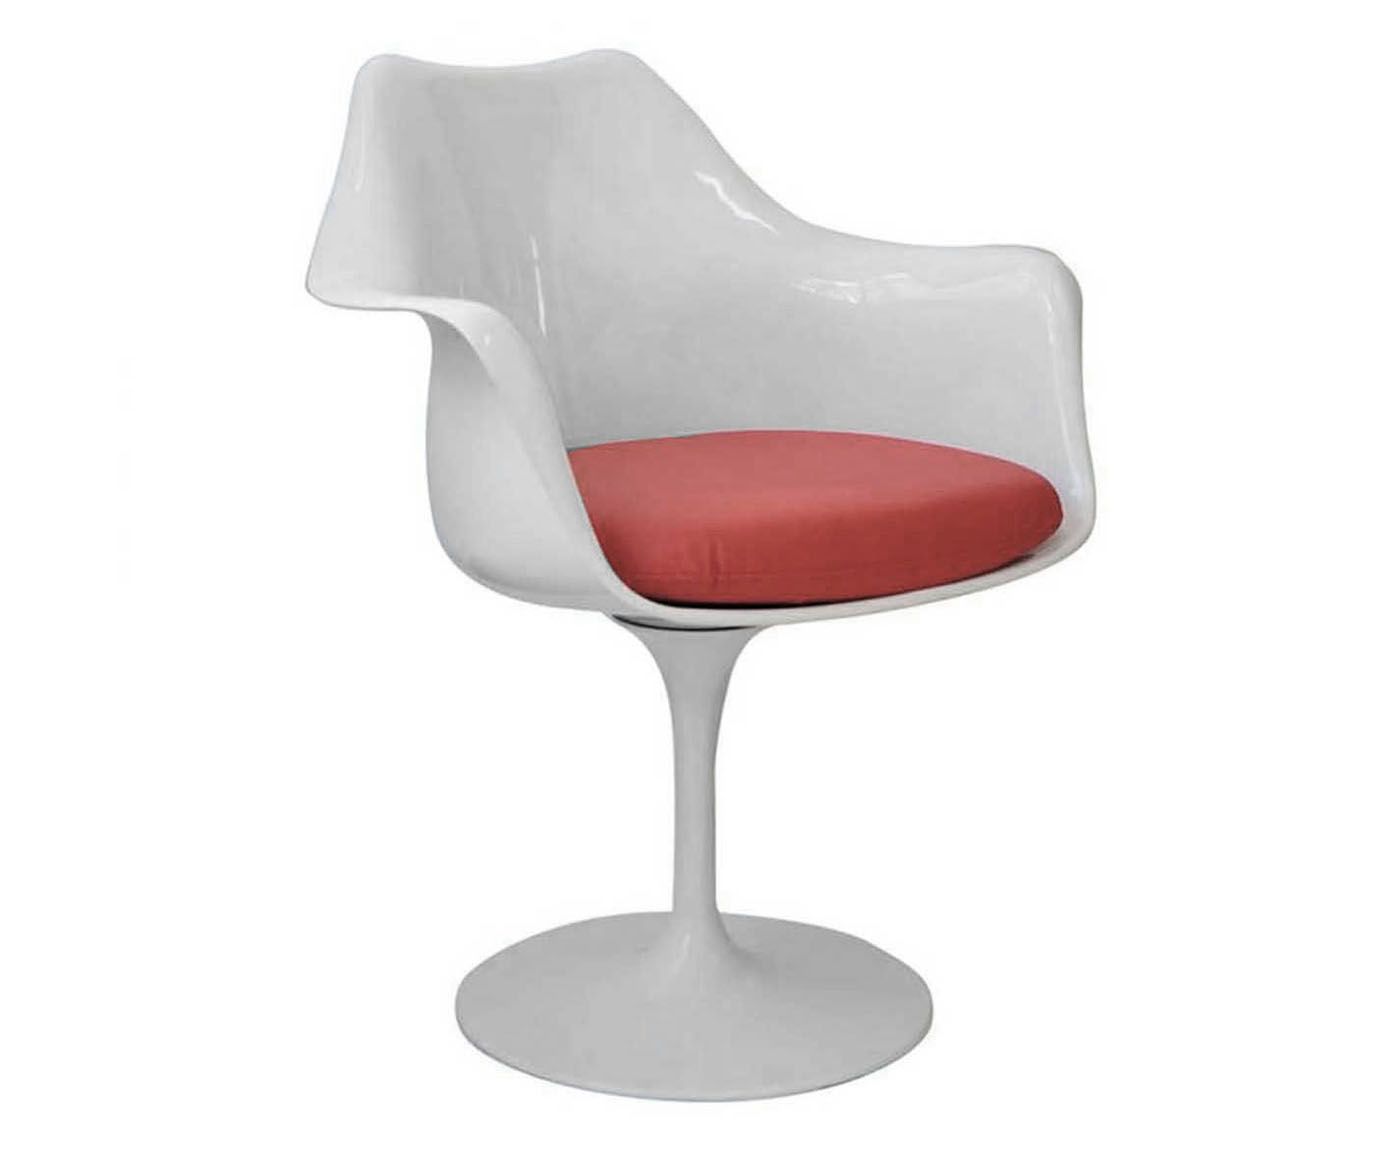 Poltrona Saarinen - Branca e Vermelha | Westwing.com.br